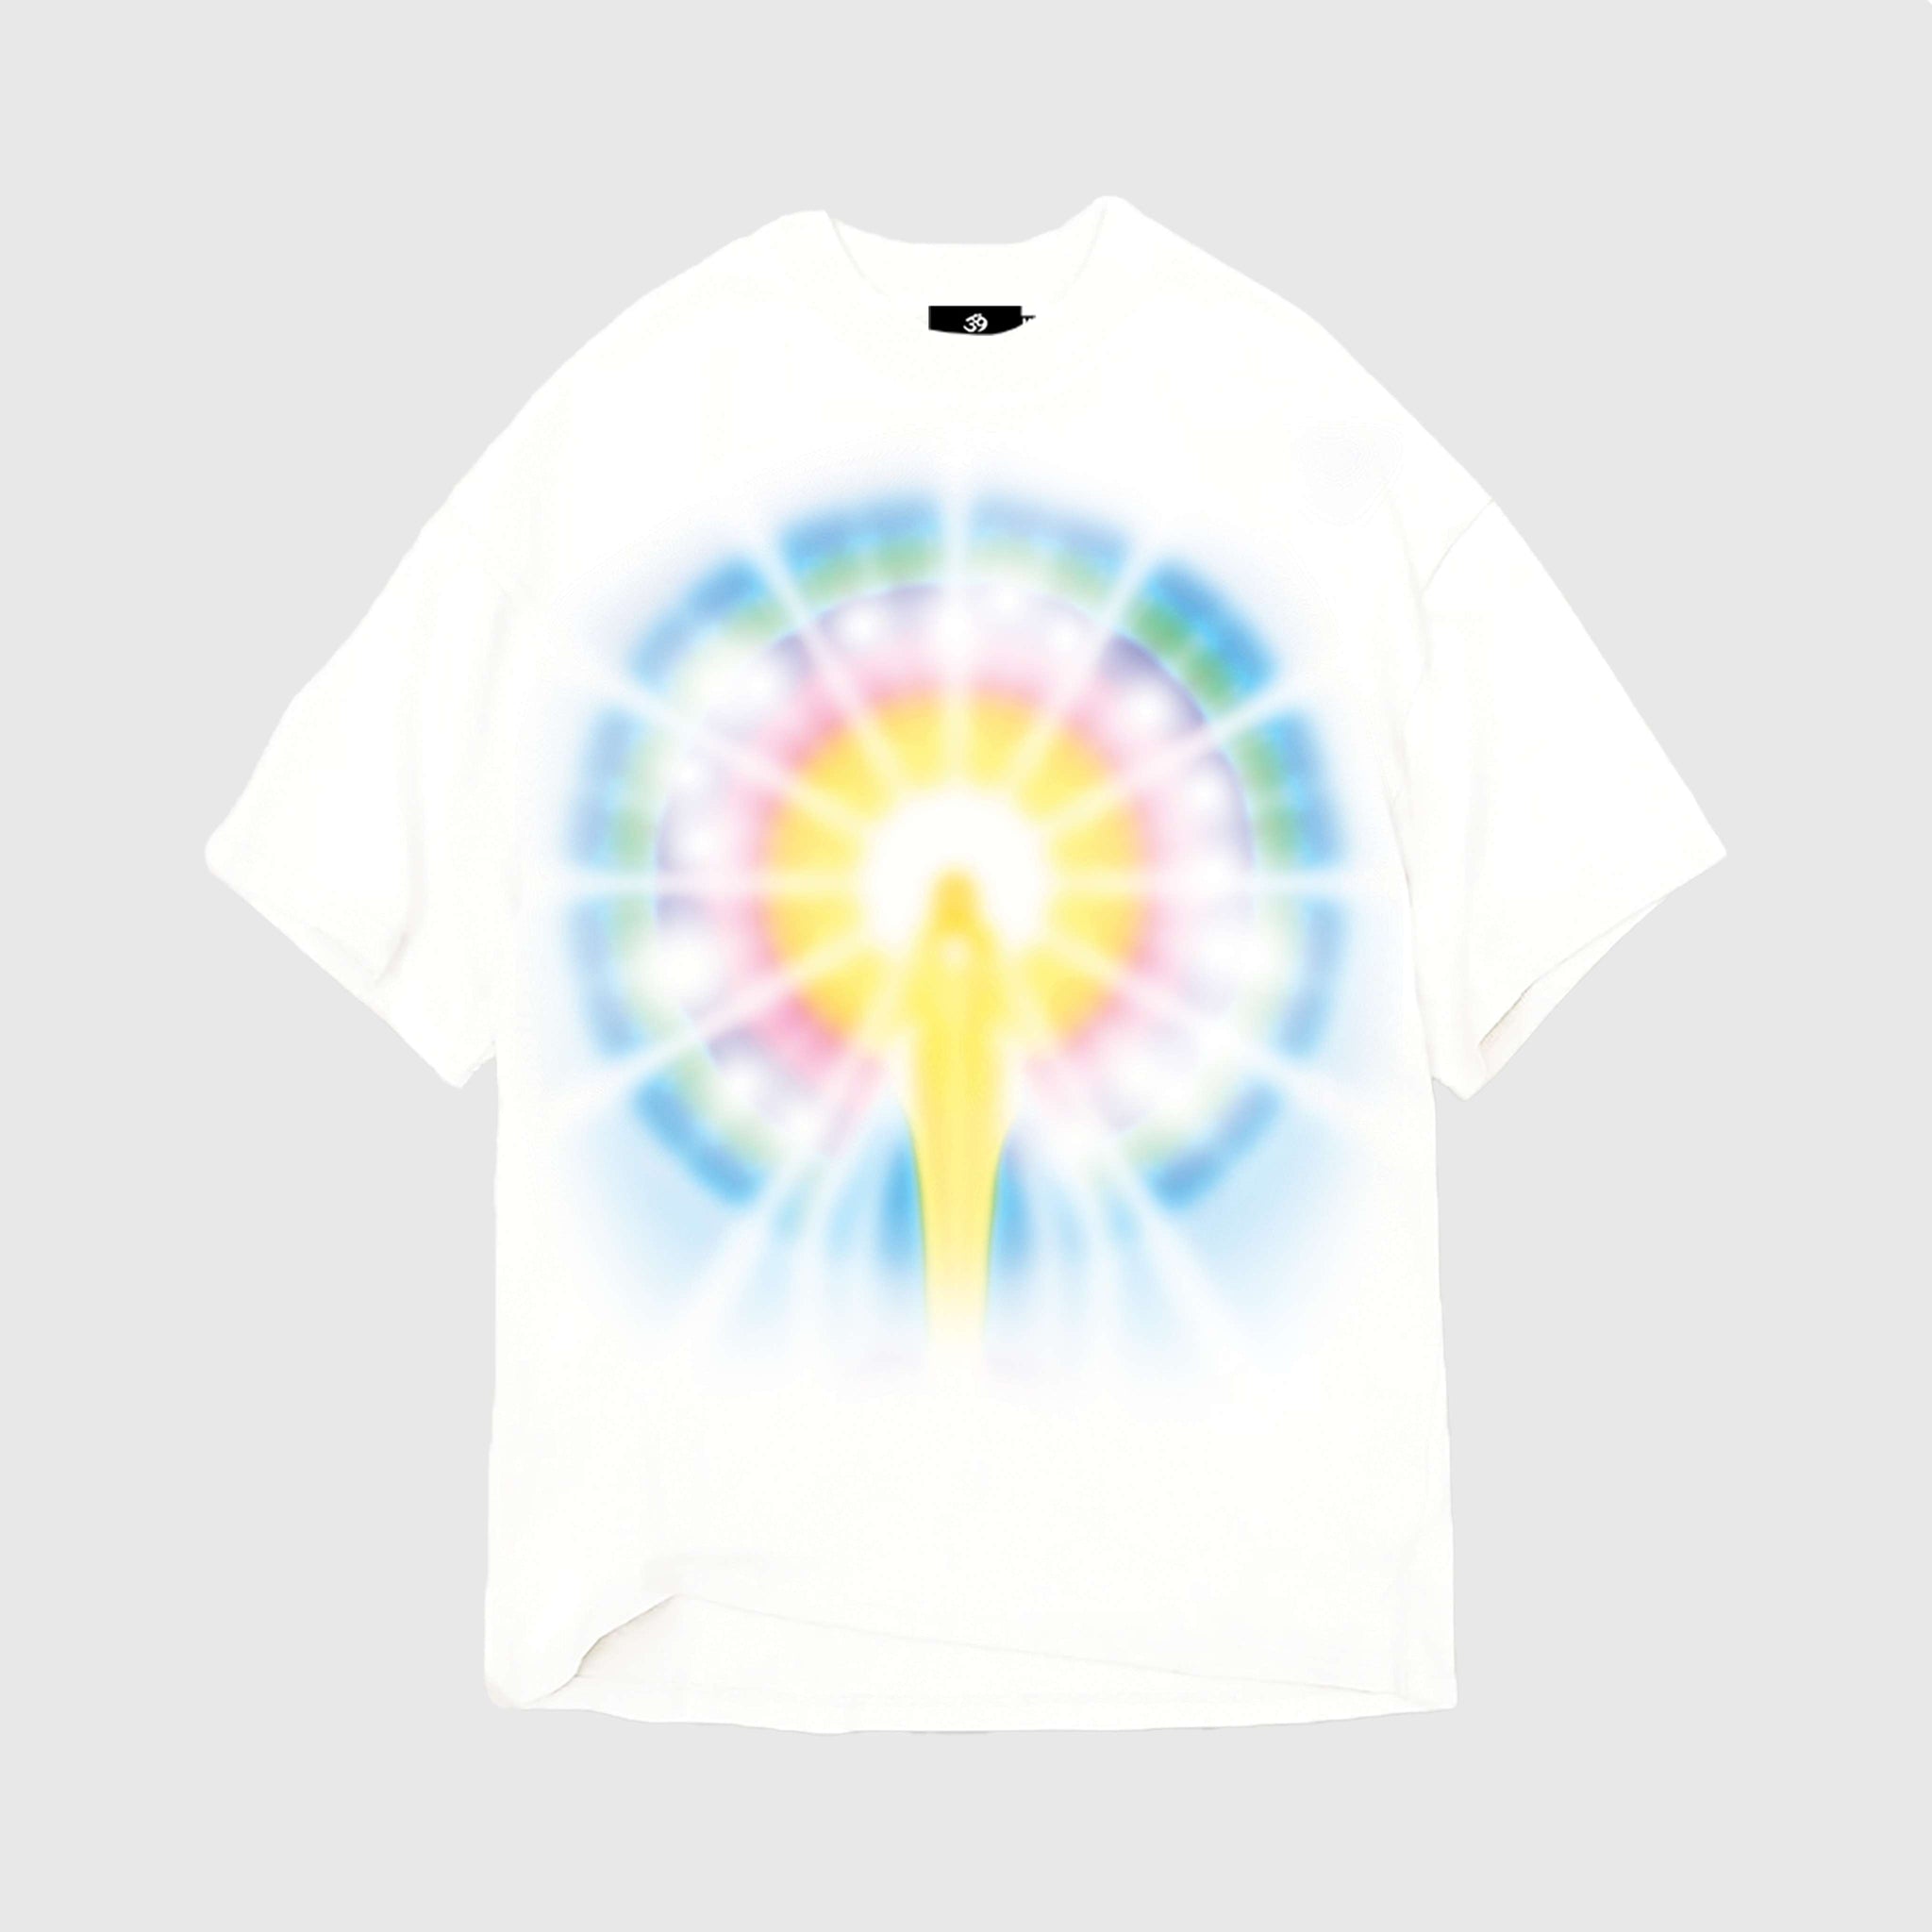 Follow The Light T-Shirt White